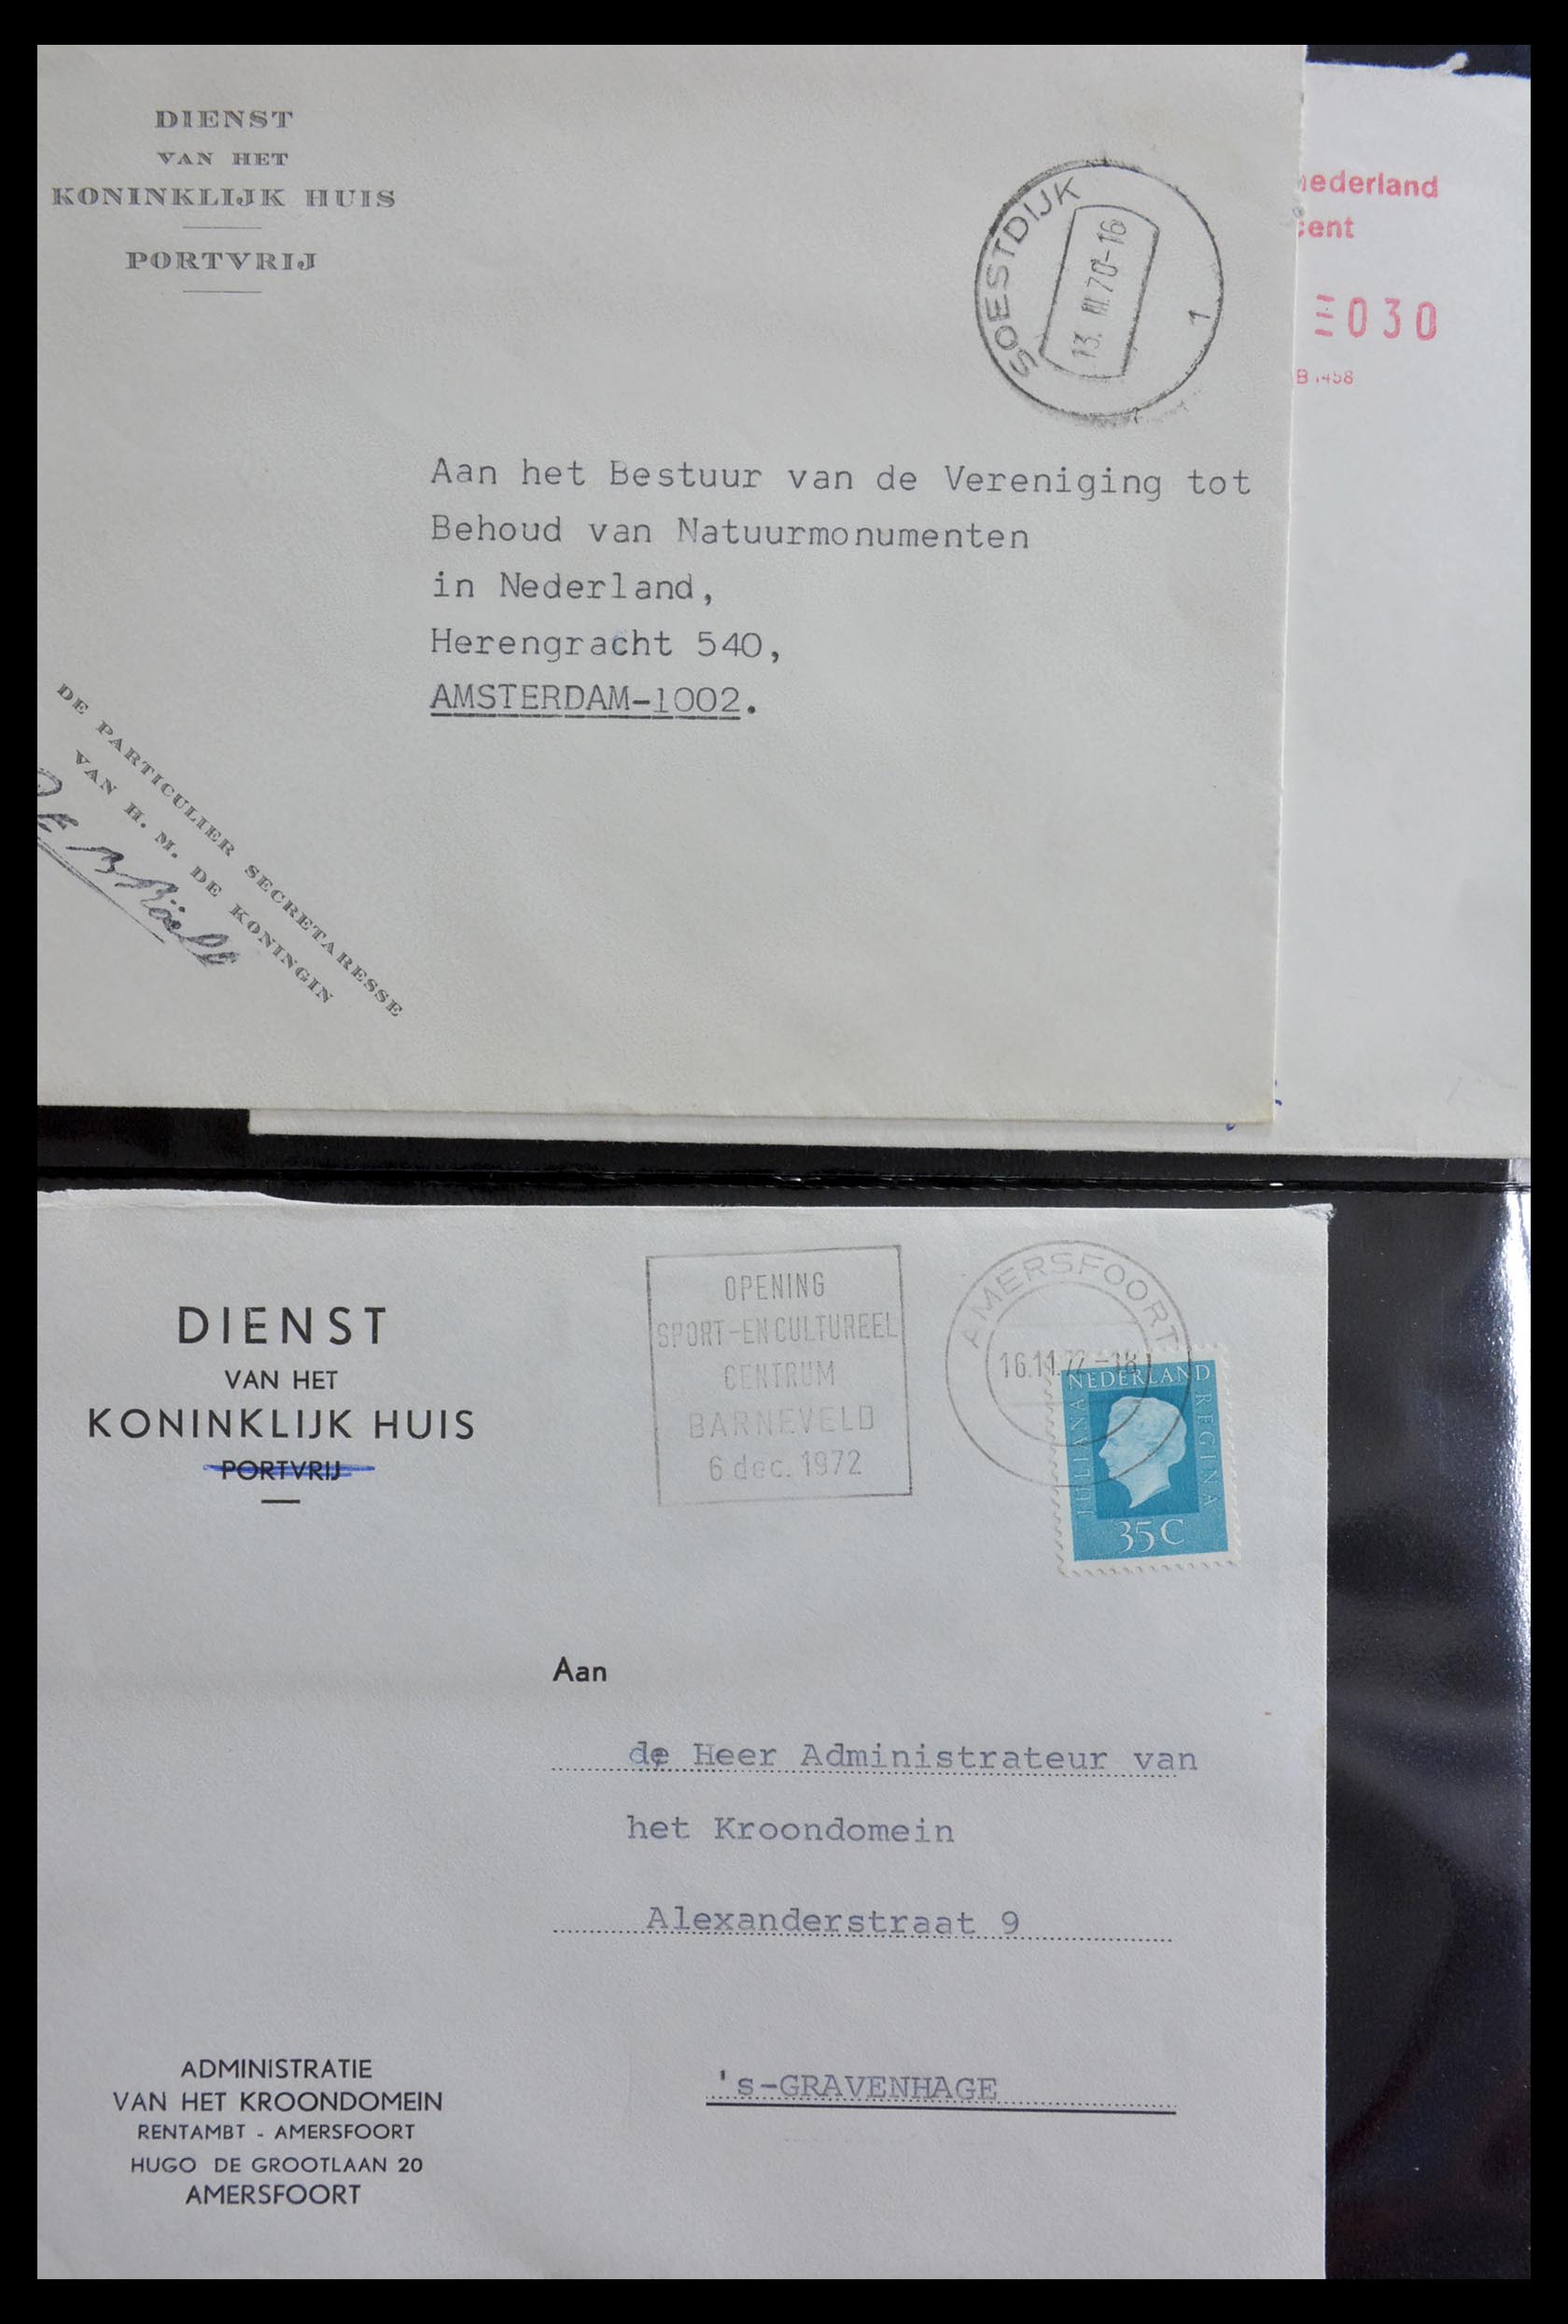 29241 010 - 29241 Nederland brieven koninklijk huis.